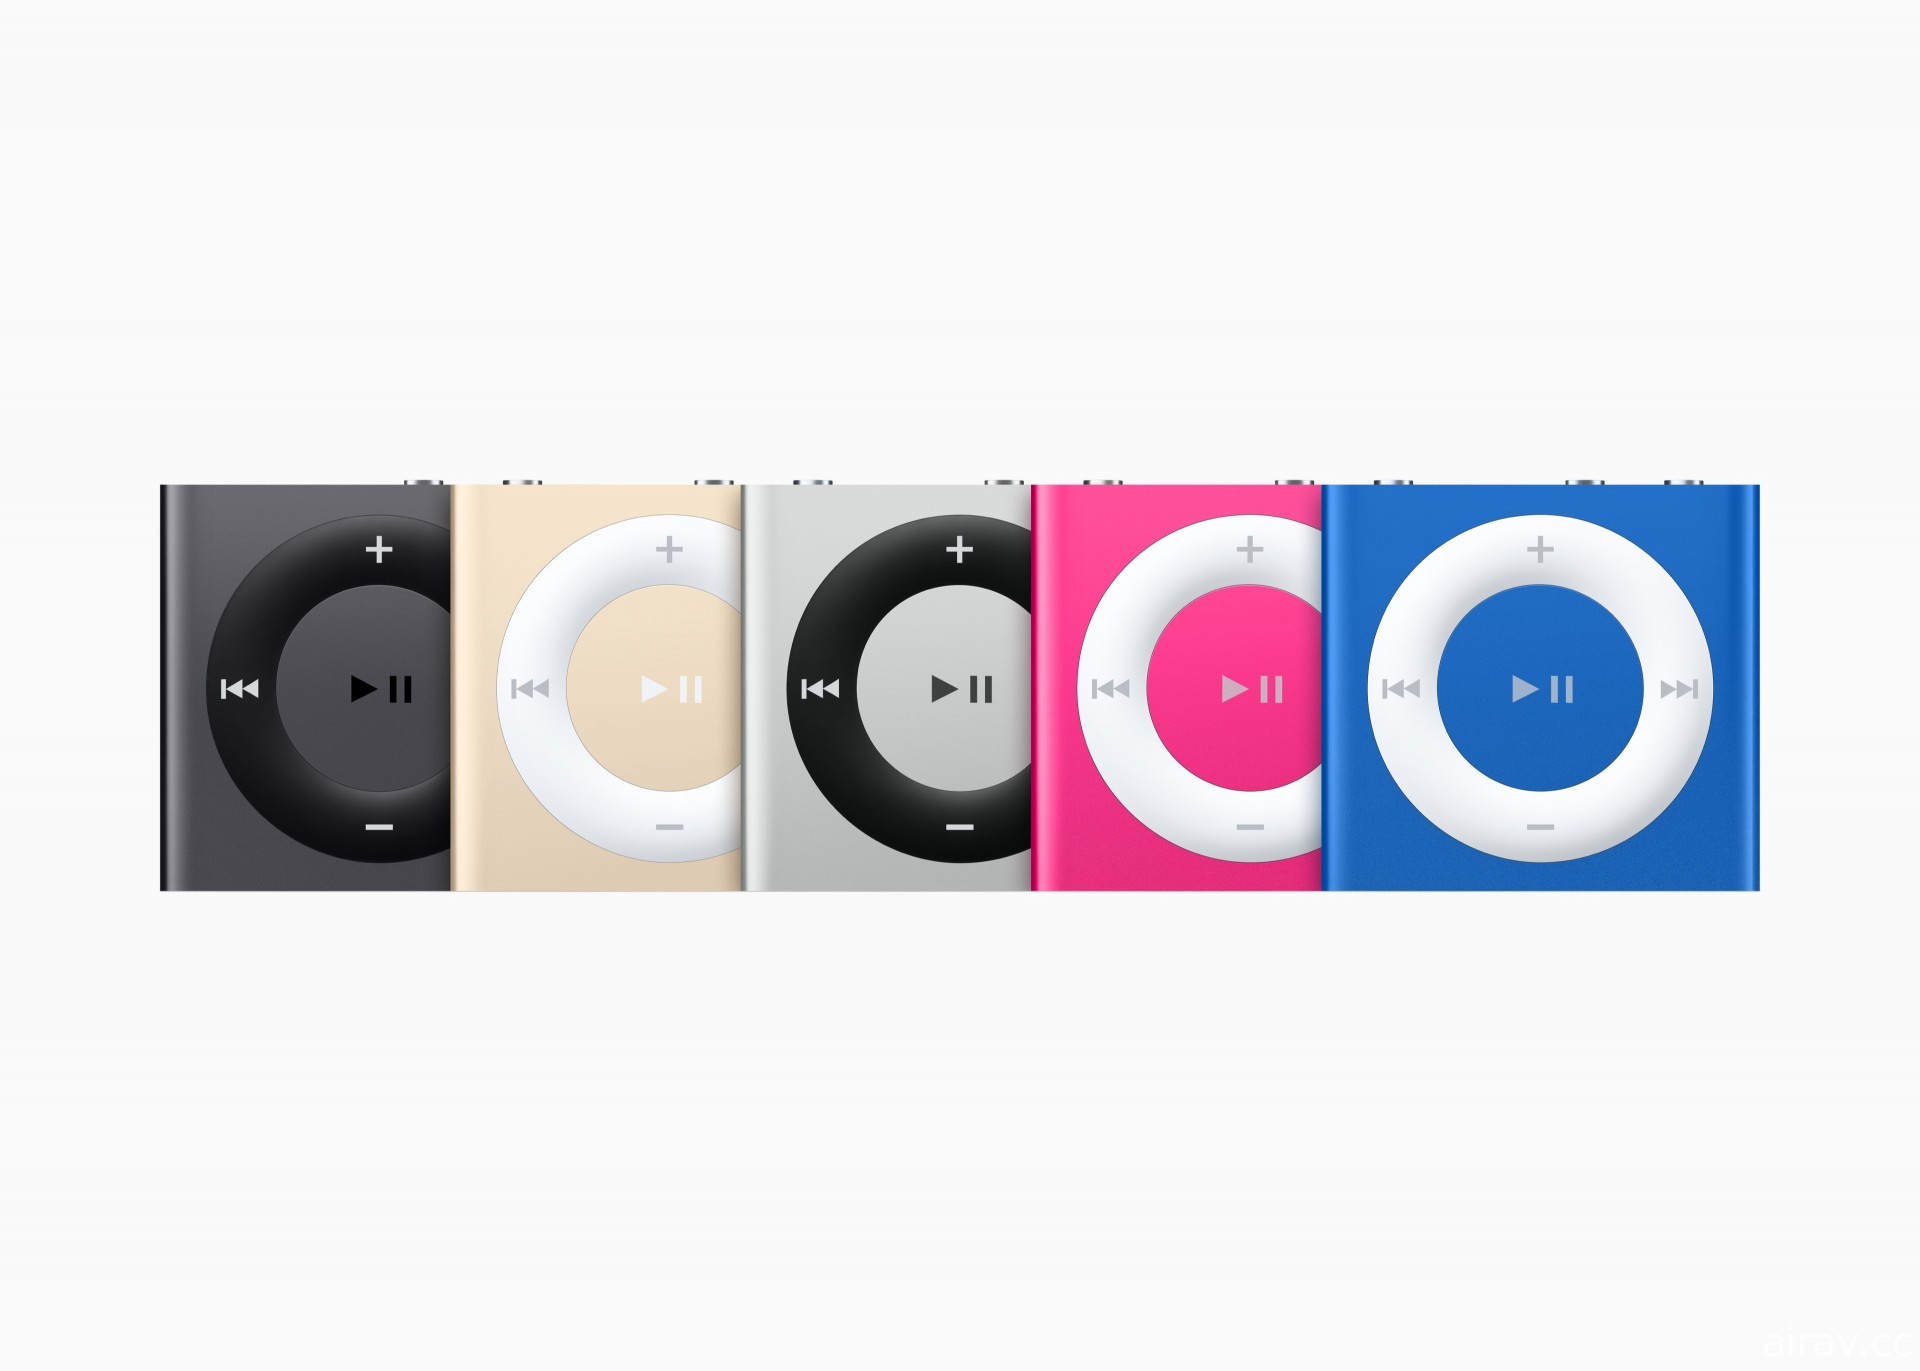 蘋果宣布 iPod touch 售完為止  iPod 自 2001 年推出 20 多年後將走入歷史